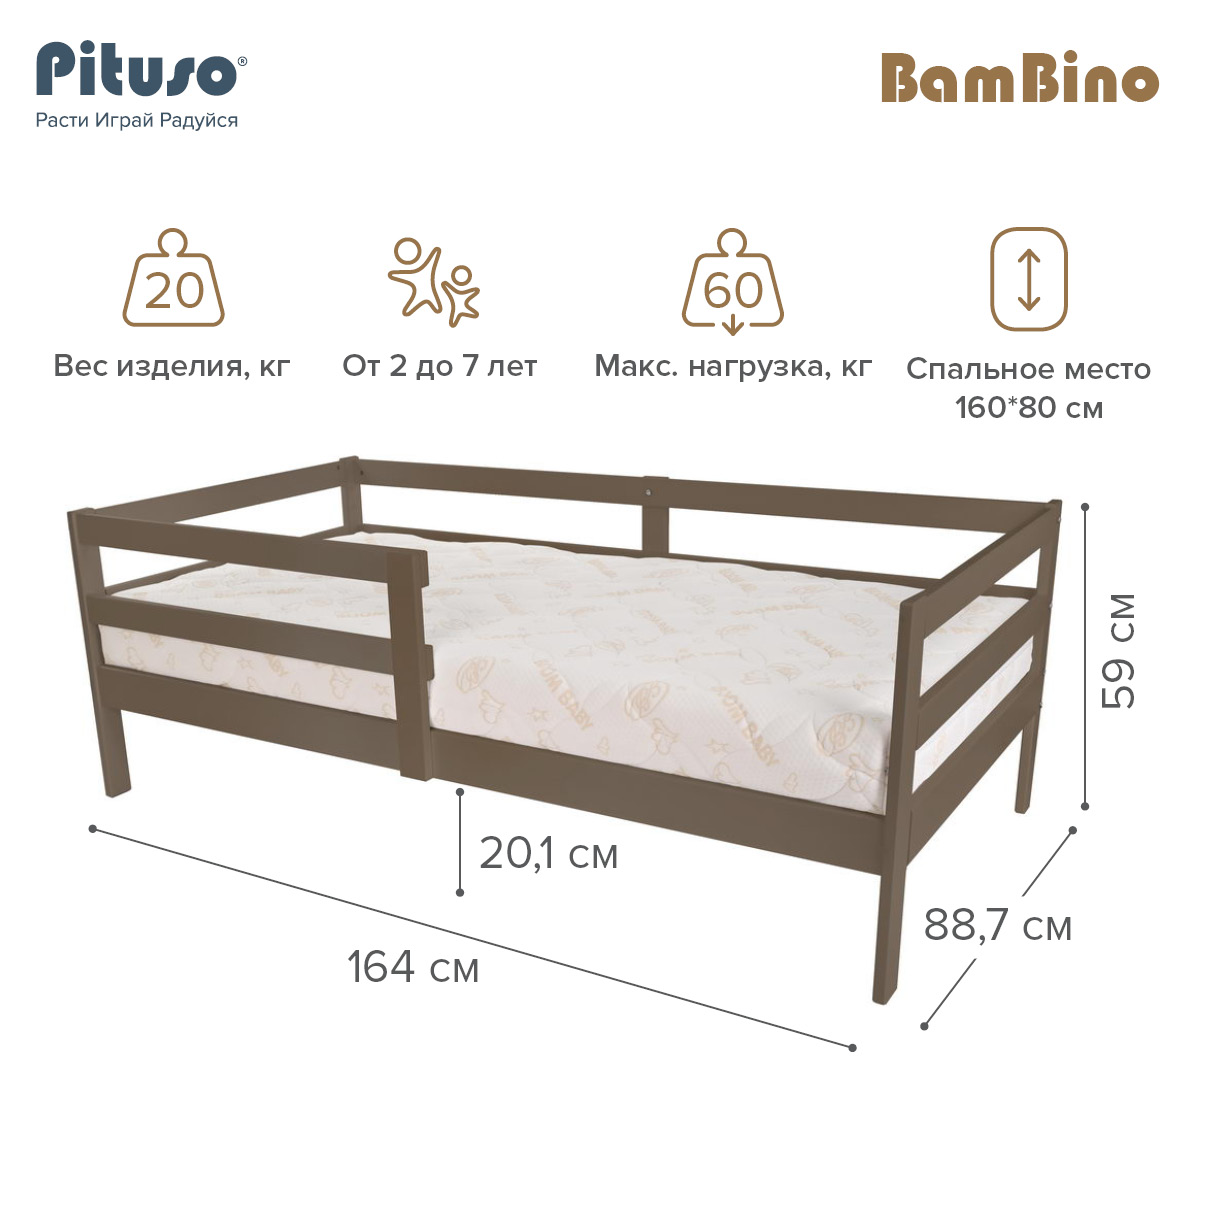 Кровать подростковая Pituso BamBino Капучино подростковая кровать pituso amada 160х80 см